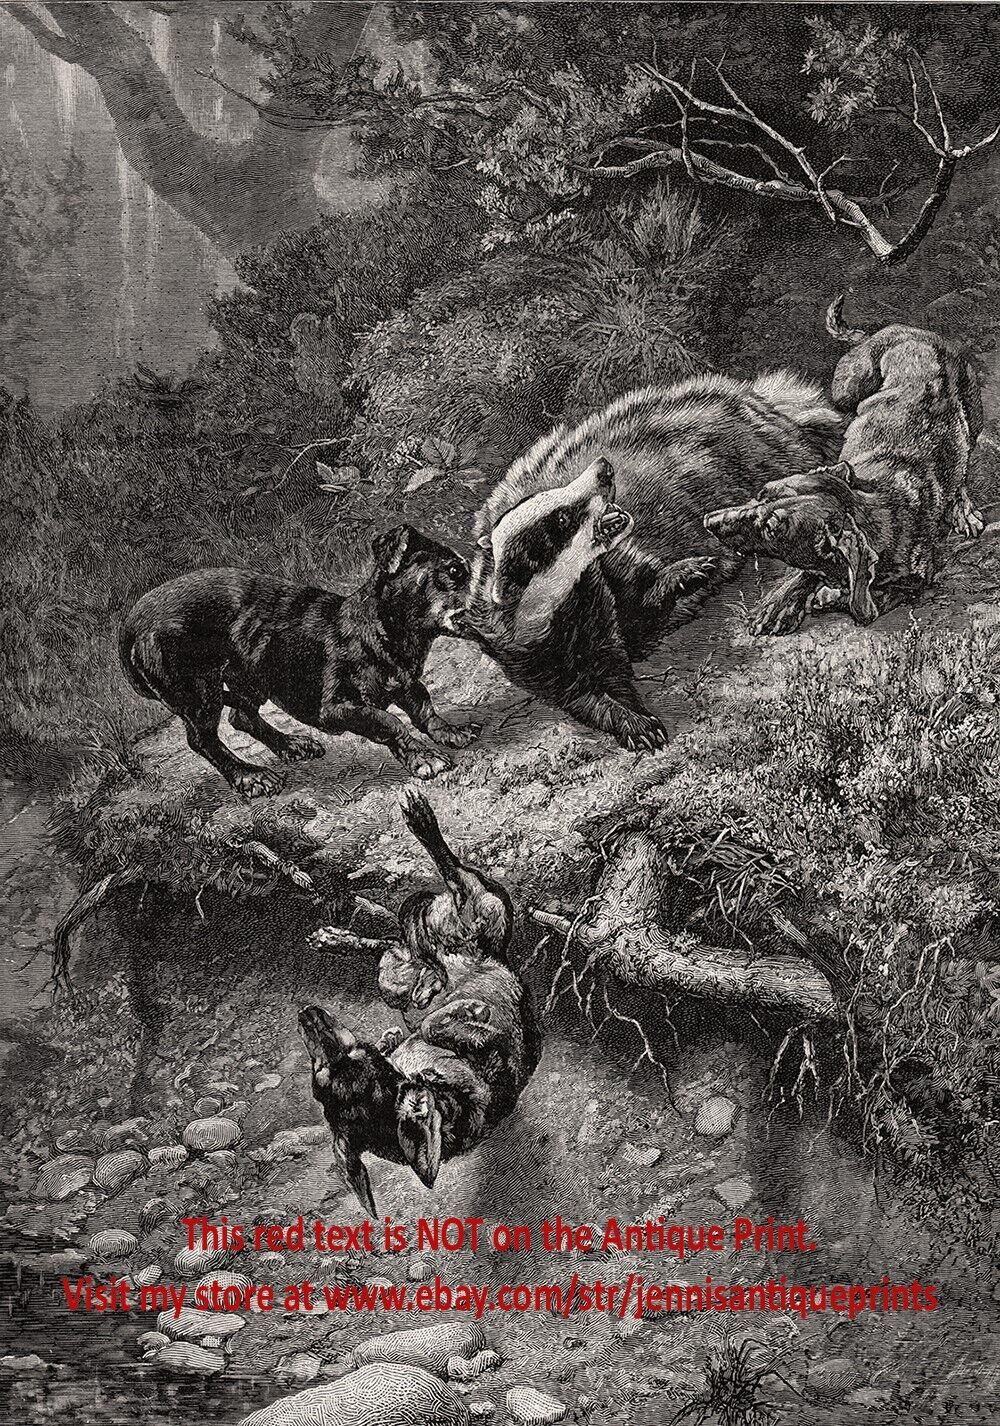 Dog Dachshunds Hunt Badger, Fierce Hunting Battle, Large 1890s Antique Print